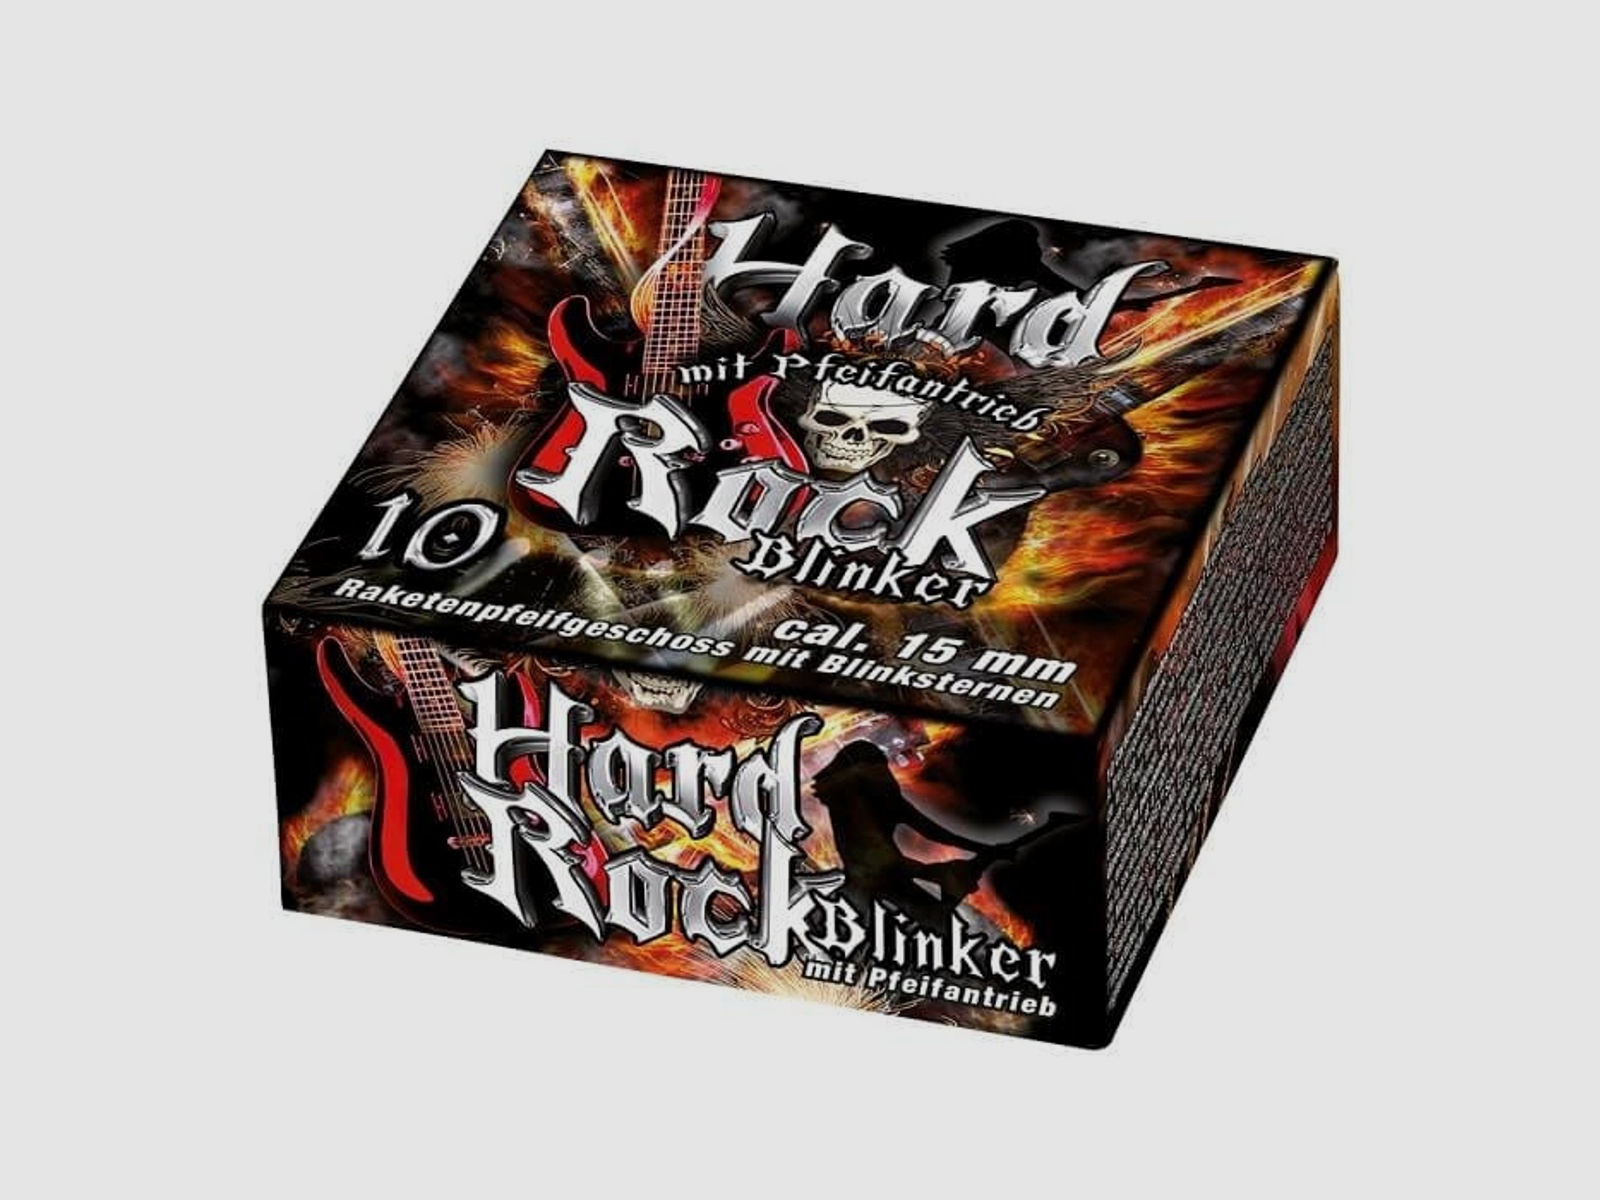 Umarex Hard Rock Blinker Signaleffekt - 10 Stk.